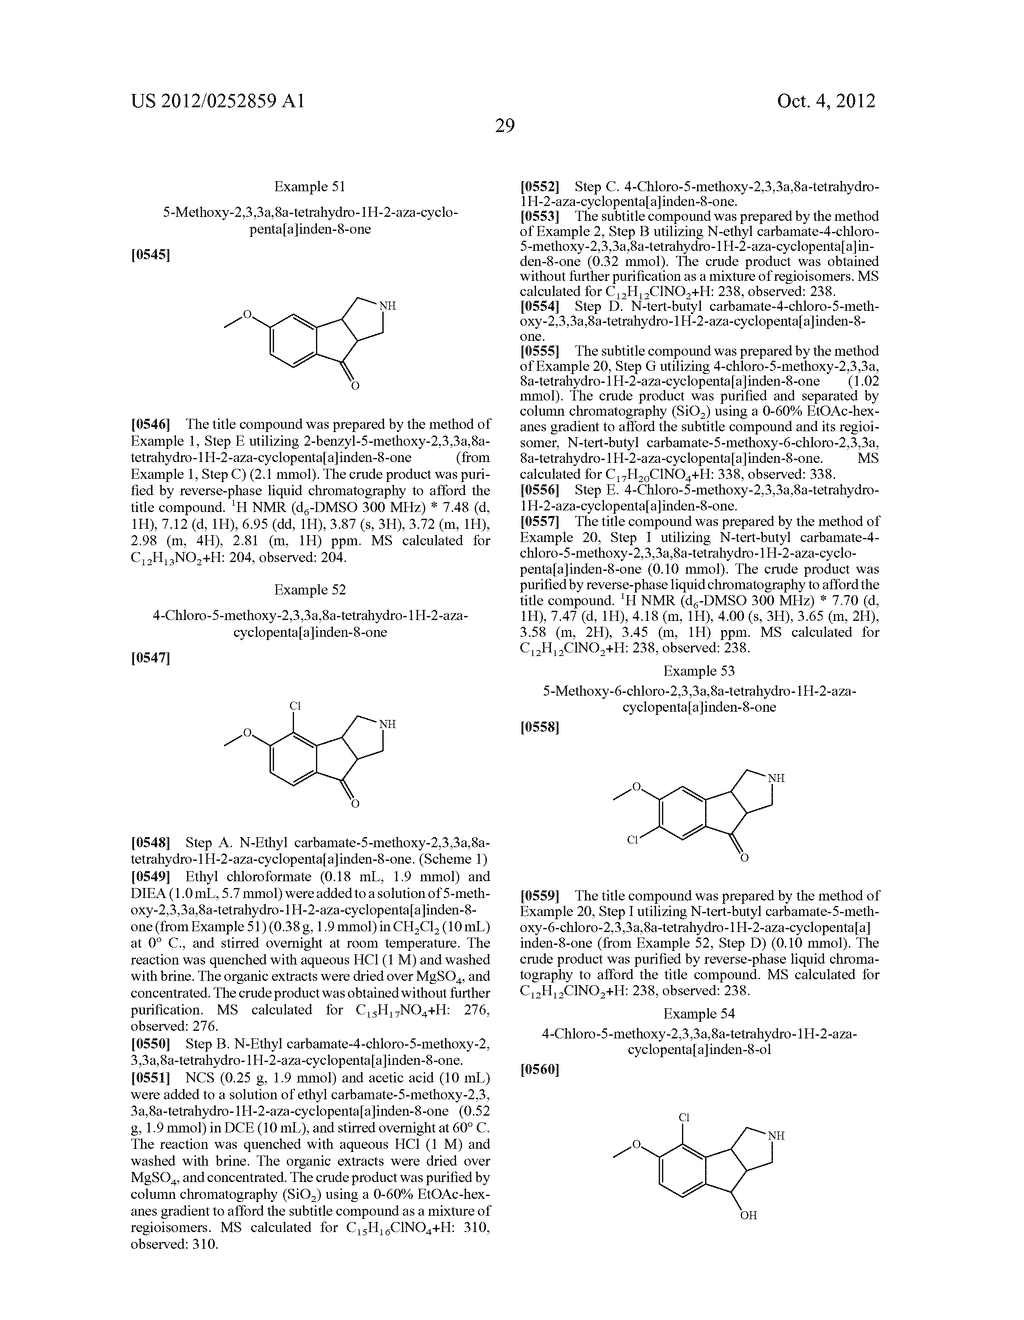 Tricyclic Indeno-Pyrrole Derivatives as Serotonin Receptor Modulators - diagram, schematic, and image 30